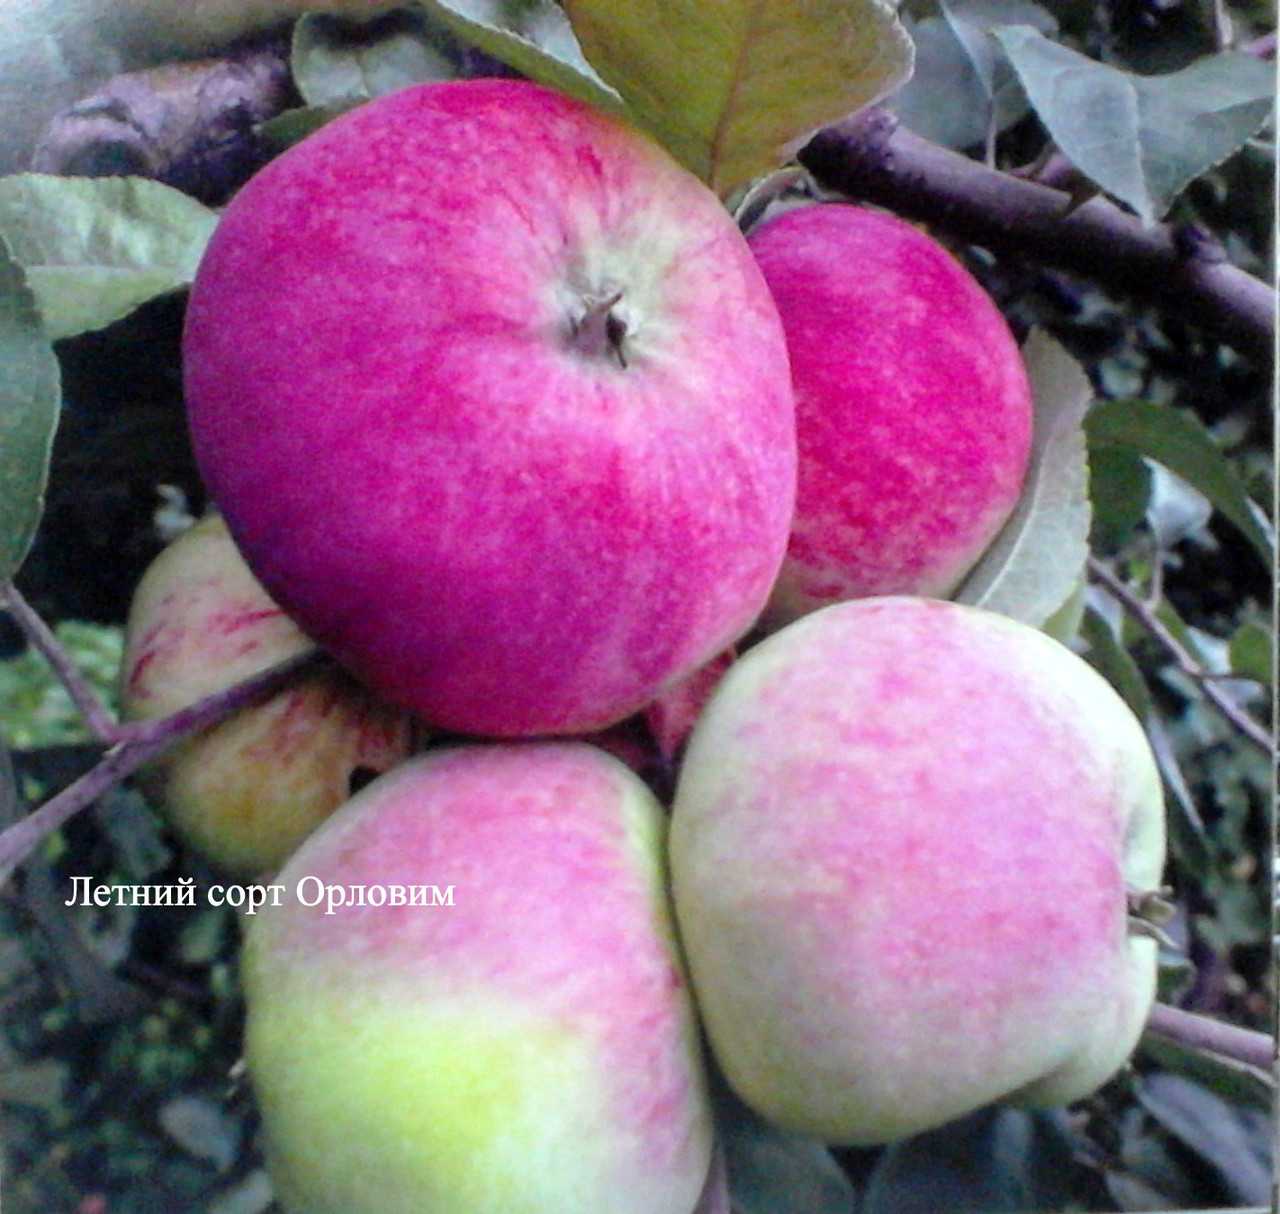 Сорт розовый налив. Сорт яблок Мельба. Яблоня "розовый налив" (Malus domestica). Яблоня Орловим. Сорт яблони Орловим.